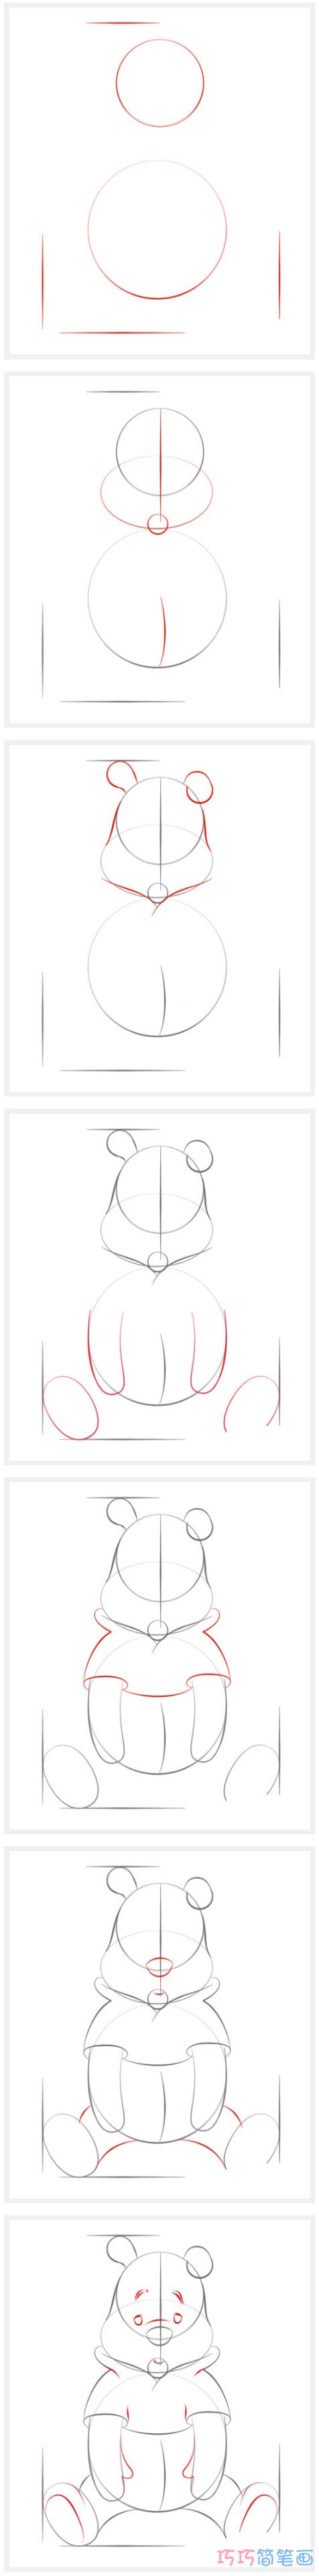 小熊维尼怎么画简洁好看_带步骤图小熊简笔画图片